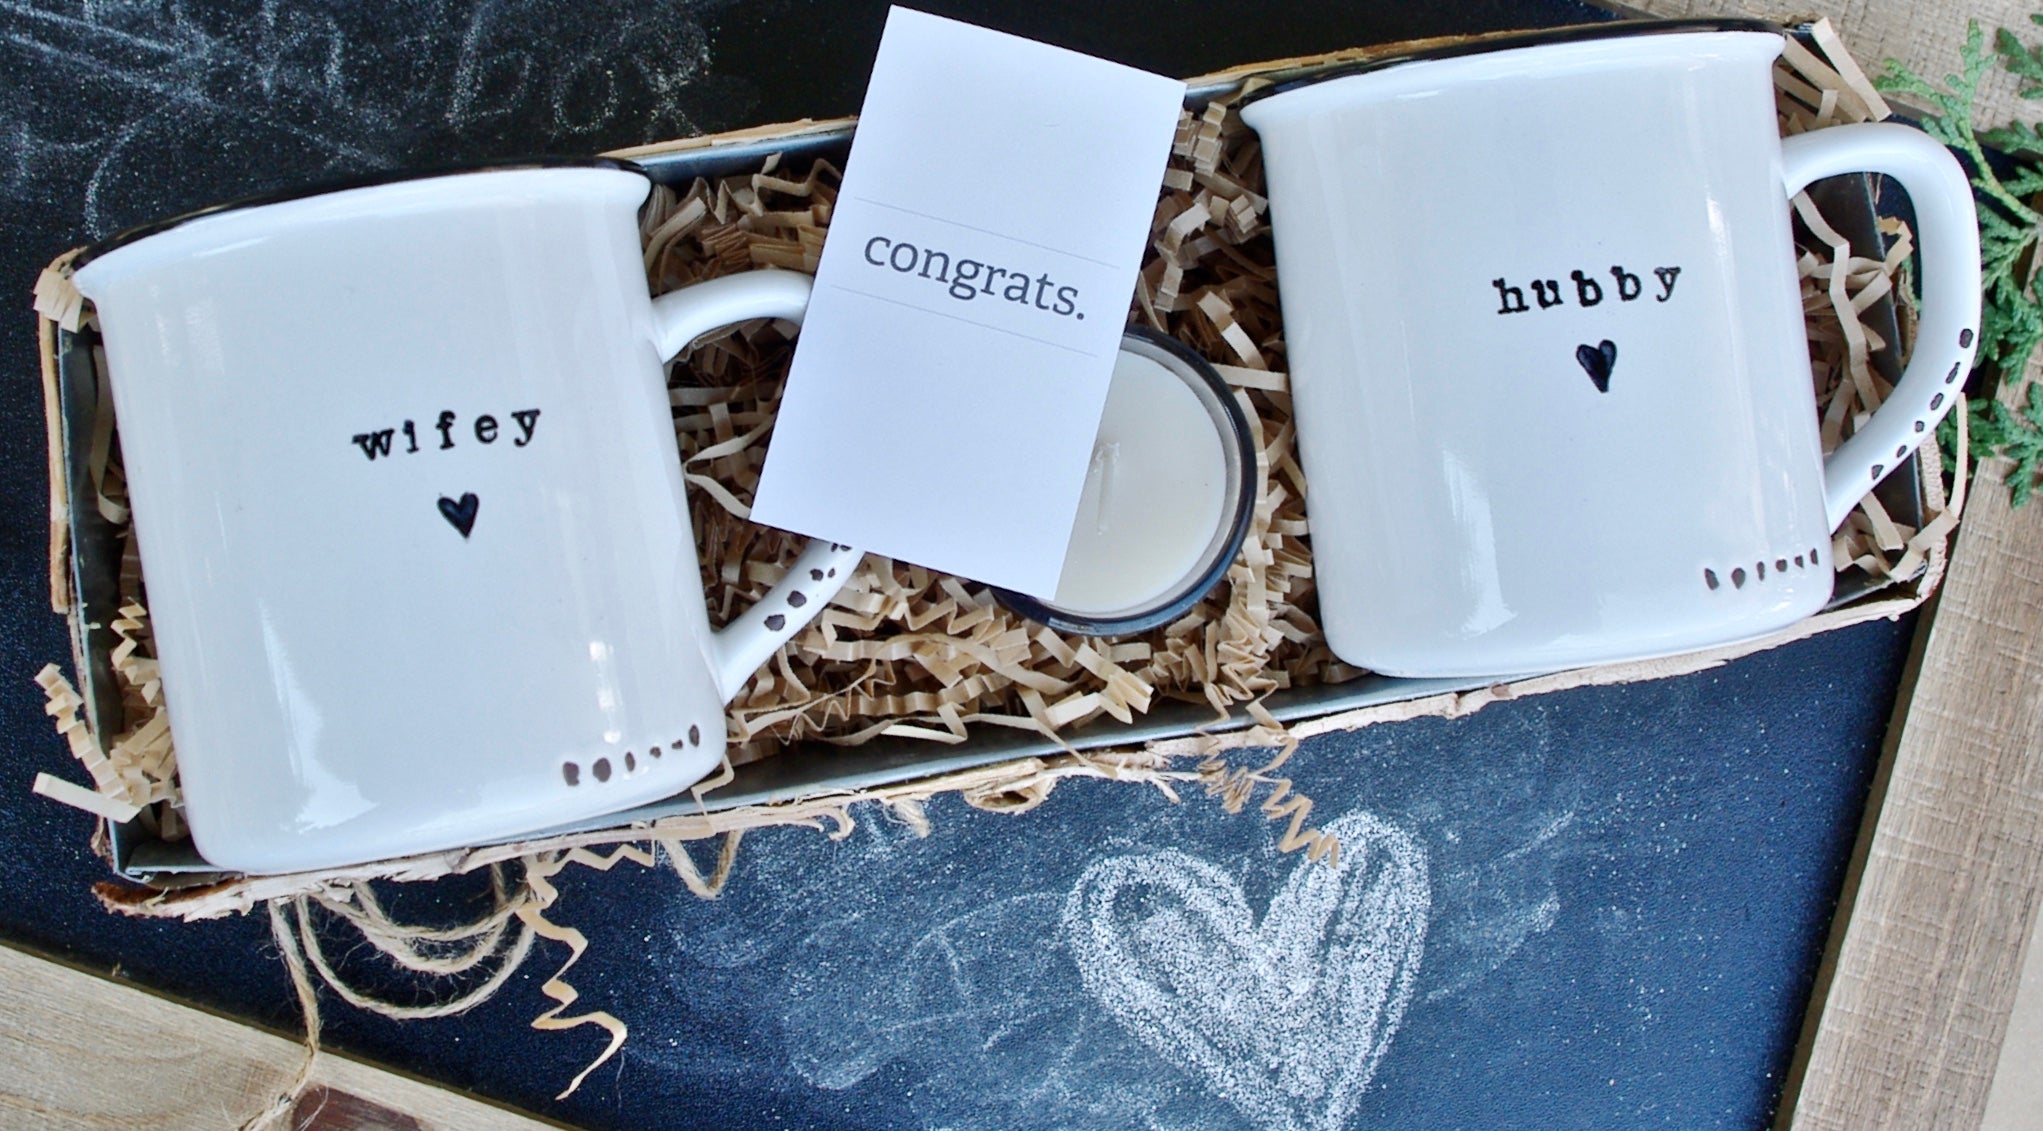 wedding mugs for bride and groom wedding mugs favors wedding mug design template wedding gifts for couples